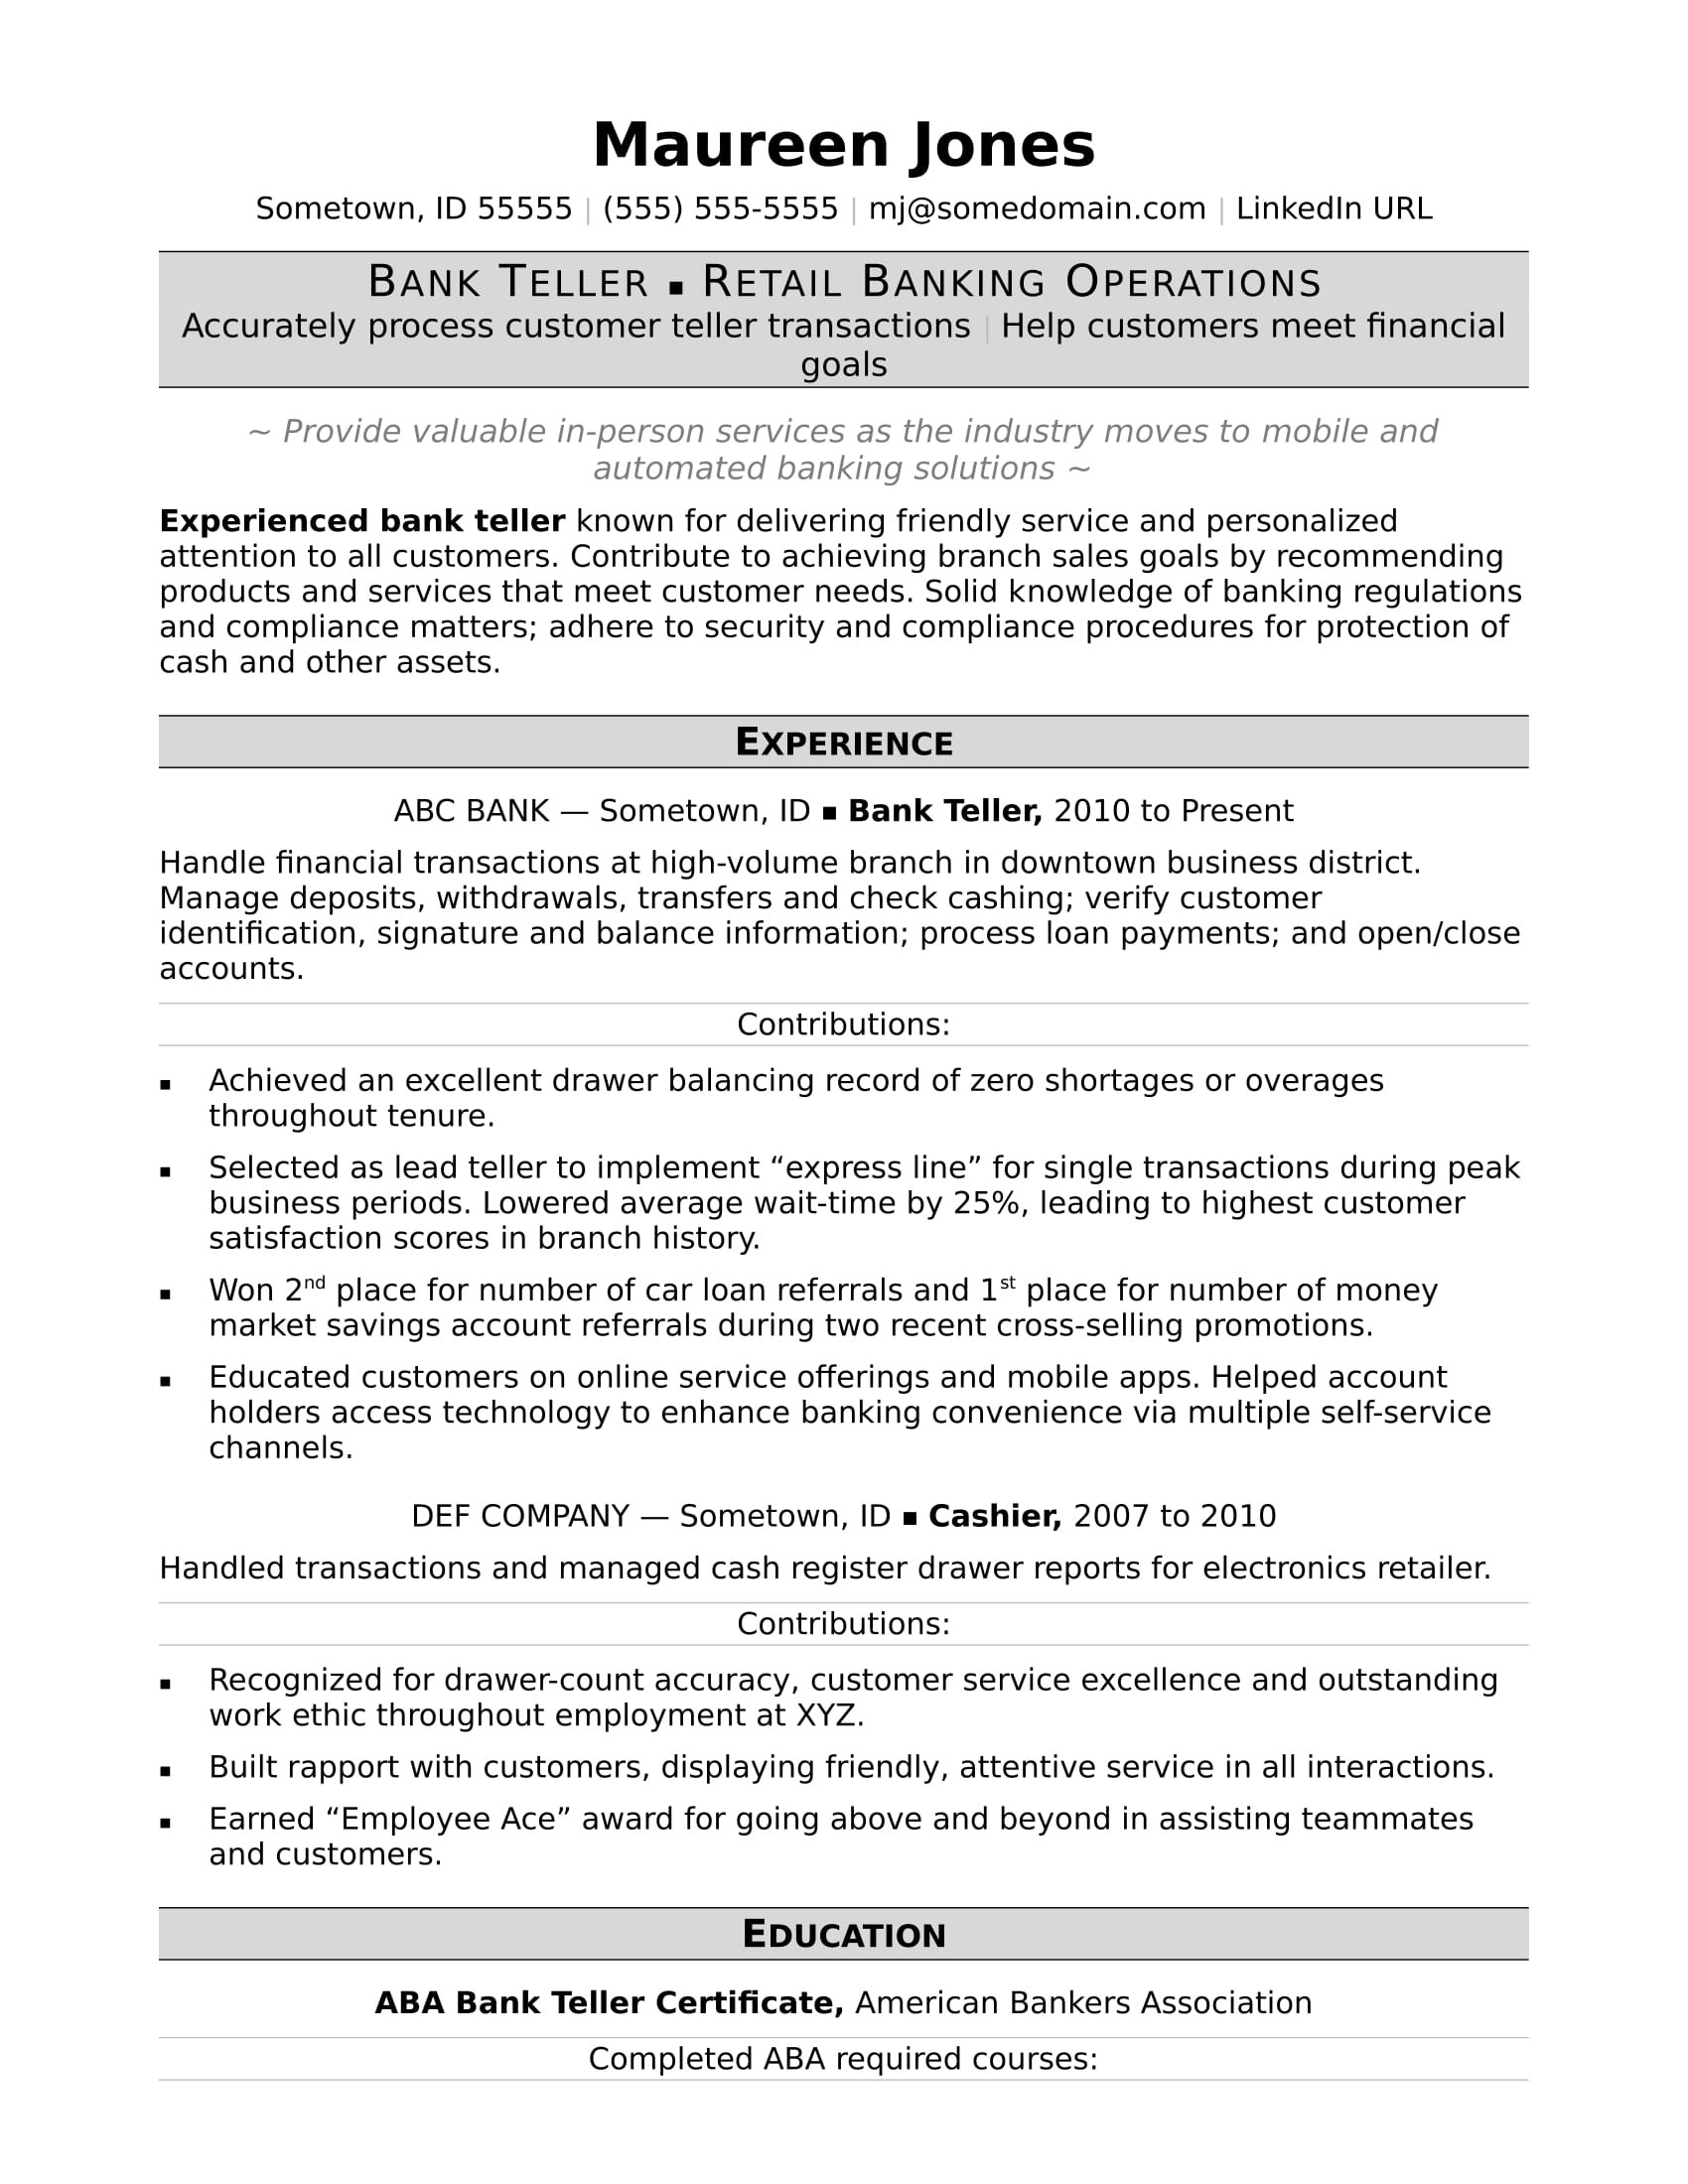 Sample Resume for Bank Teller In Canada Bank Teller Resume Monster.com